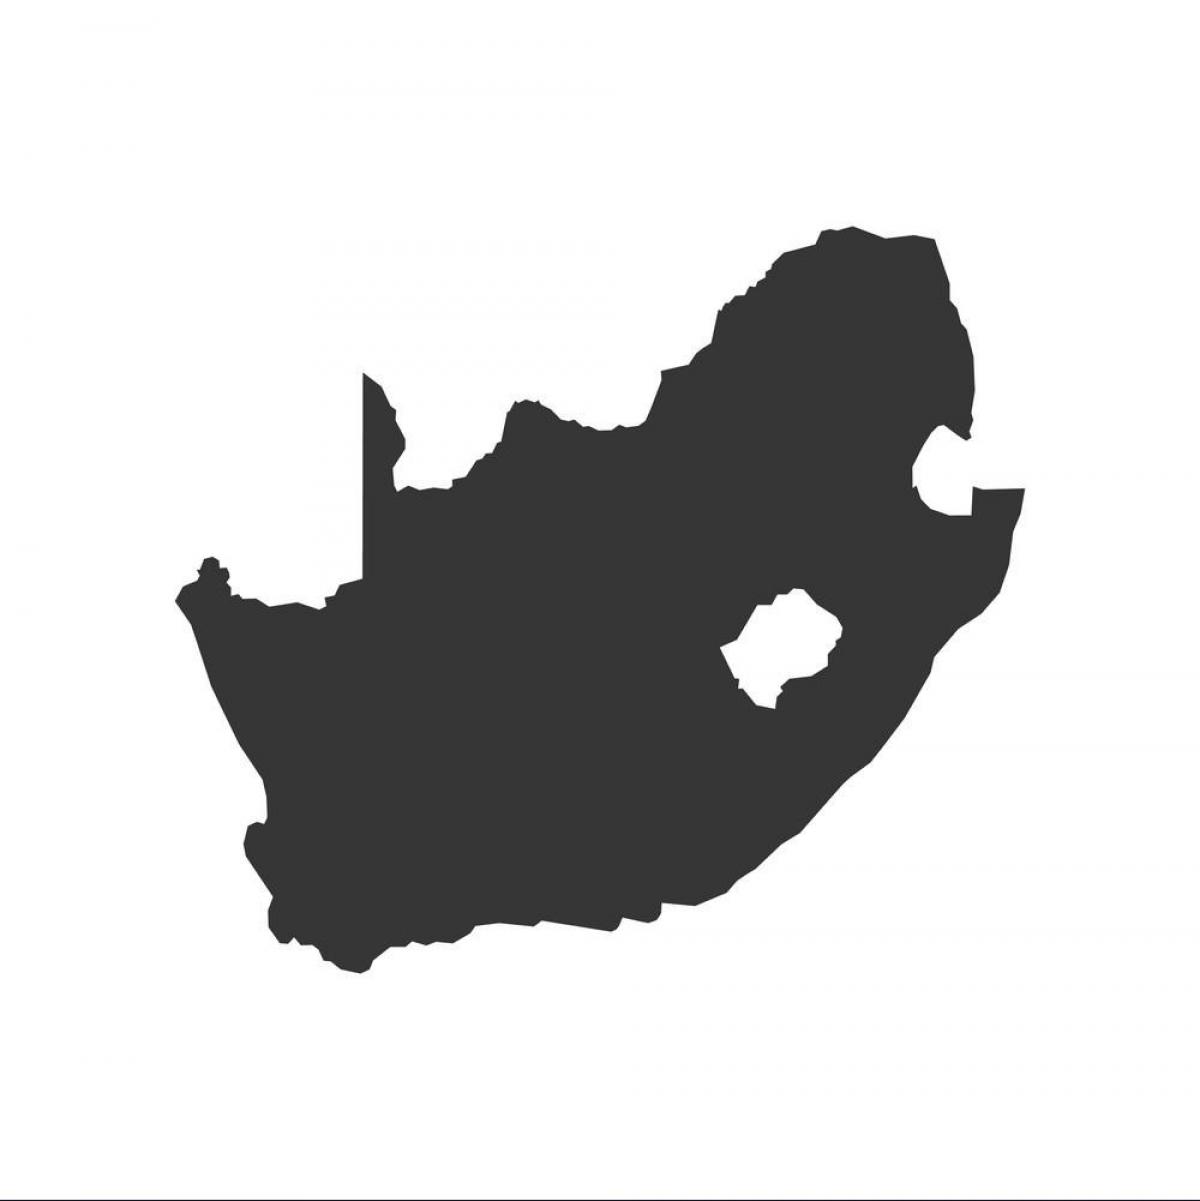 Mapa konturowa Republiki Południowej Afryki